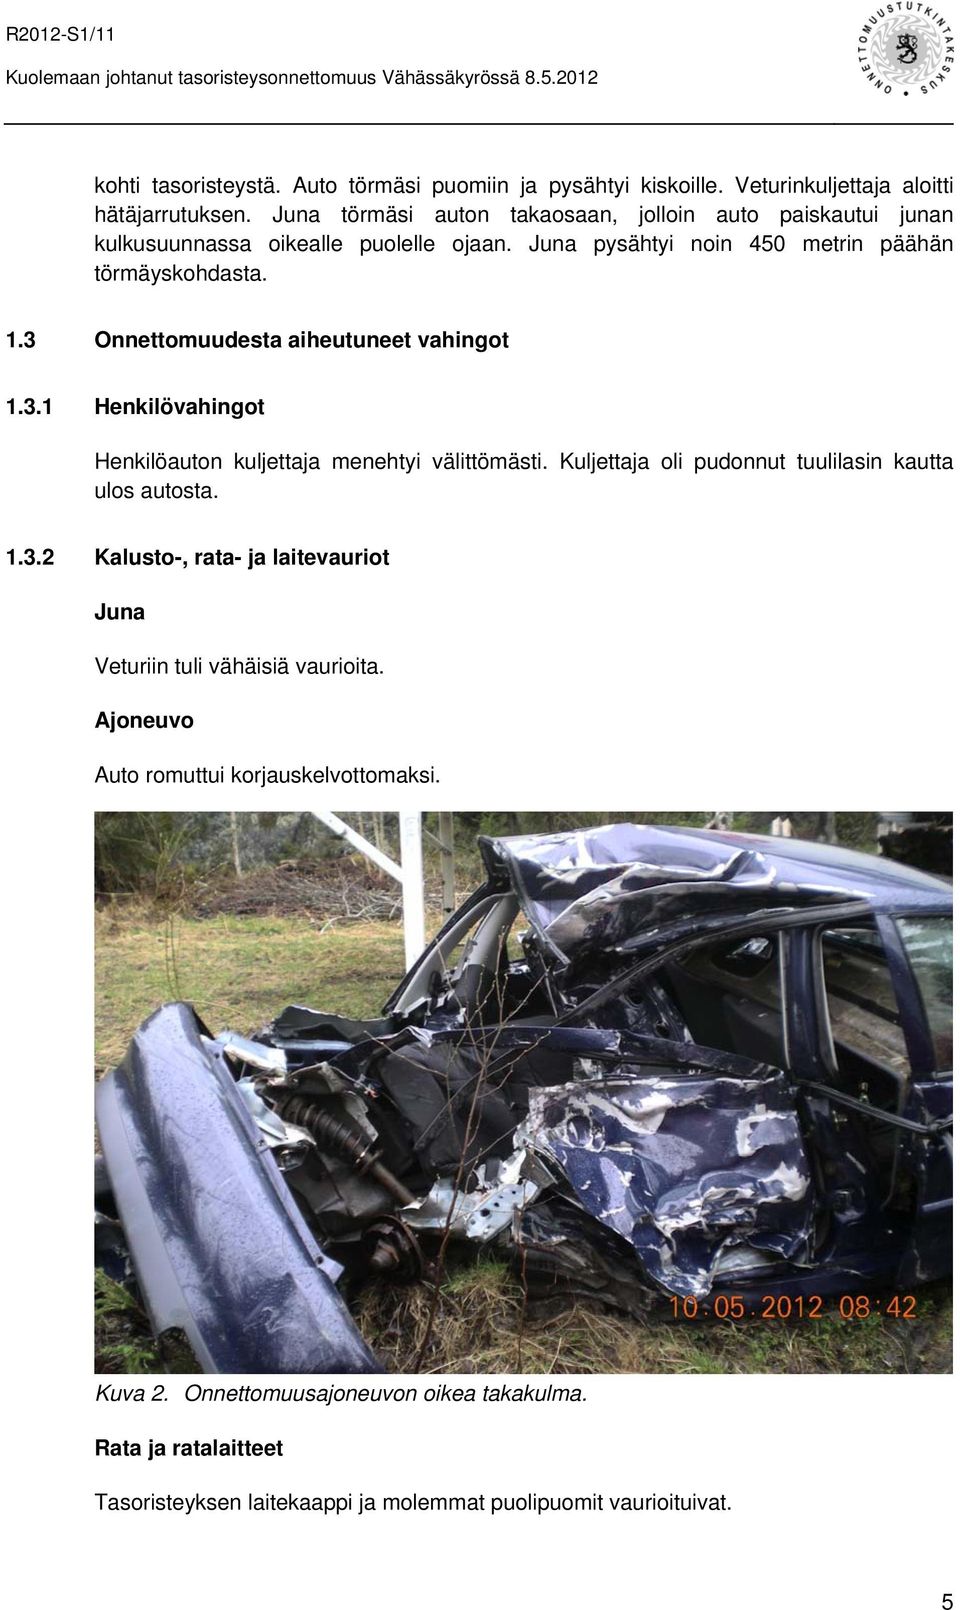 3 Onnettomuudesta aiheutuneet vahingot 1.3.1 Henkilövahingot Henkilöauton kuljettaja menehtyi välittömästi. Kuljettaja oli pudonnut tuulilasin kautta ulos autosta. 1.3.2 Kalusto-, rata- ja laitevauriot Juna Veturiin tuli vähäisiä vaurioita.